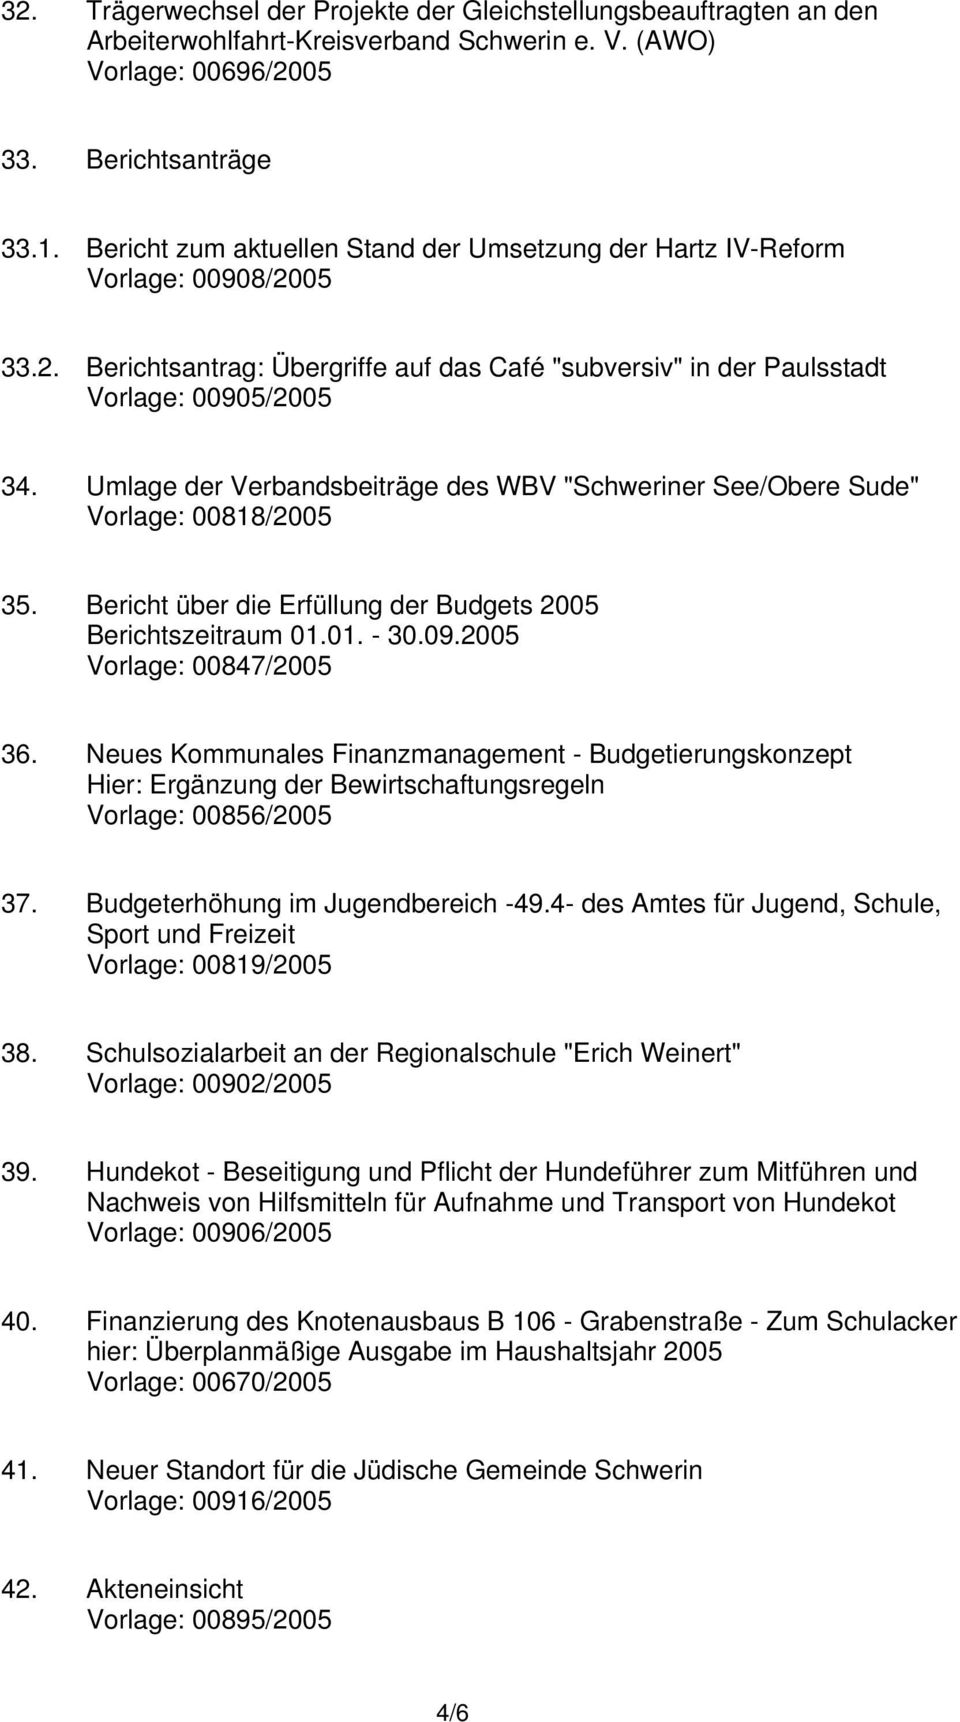 Umlage der Verbandsbeiträge des WBV "Schweriner See/Obere Sude" Vorlage: 00818/2005 35. Bericht über die Erfüllung der Budgets 2005 Berichtszeitraum 01.01. - 30.09.2005 Vorlage: 00847/2005 36.